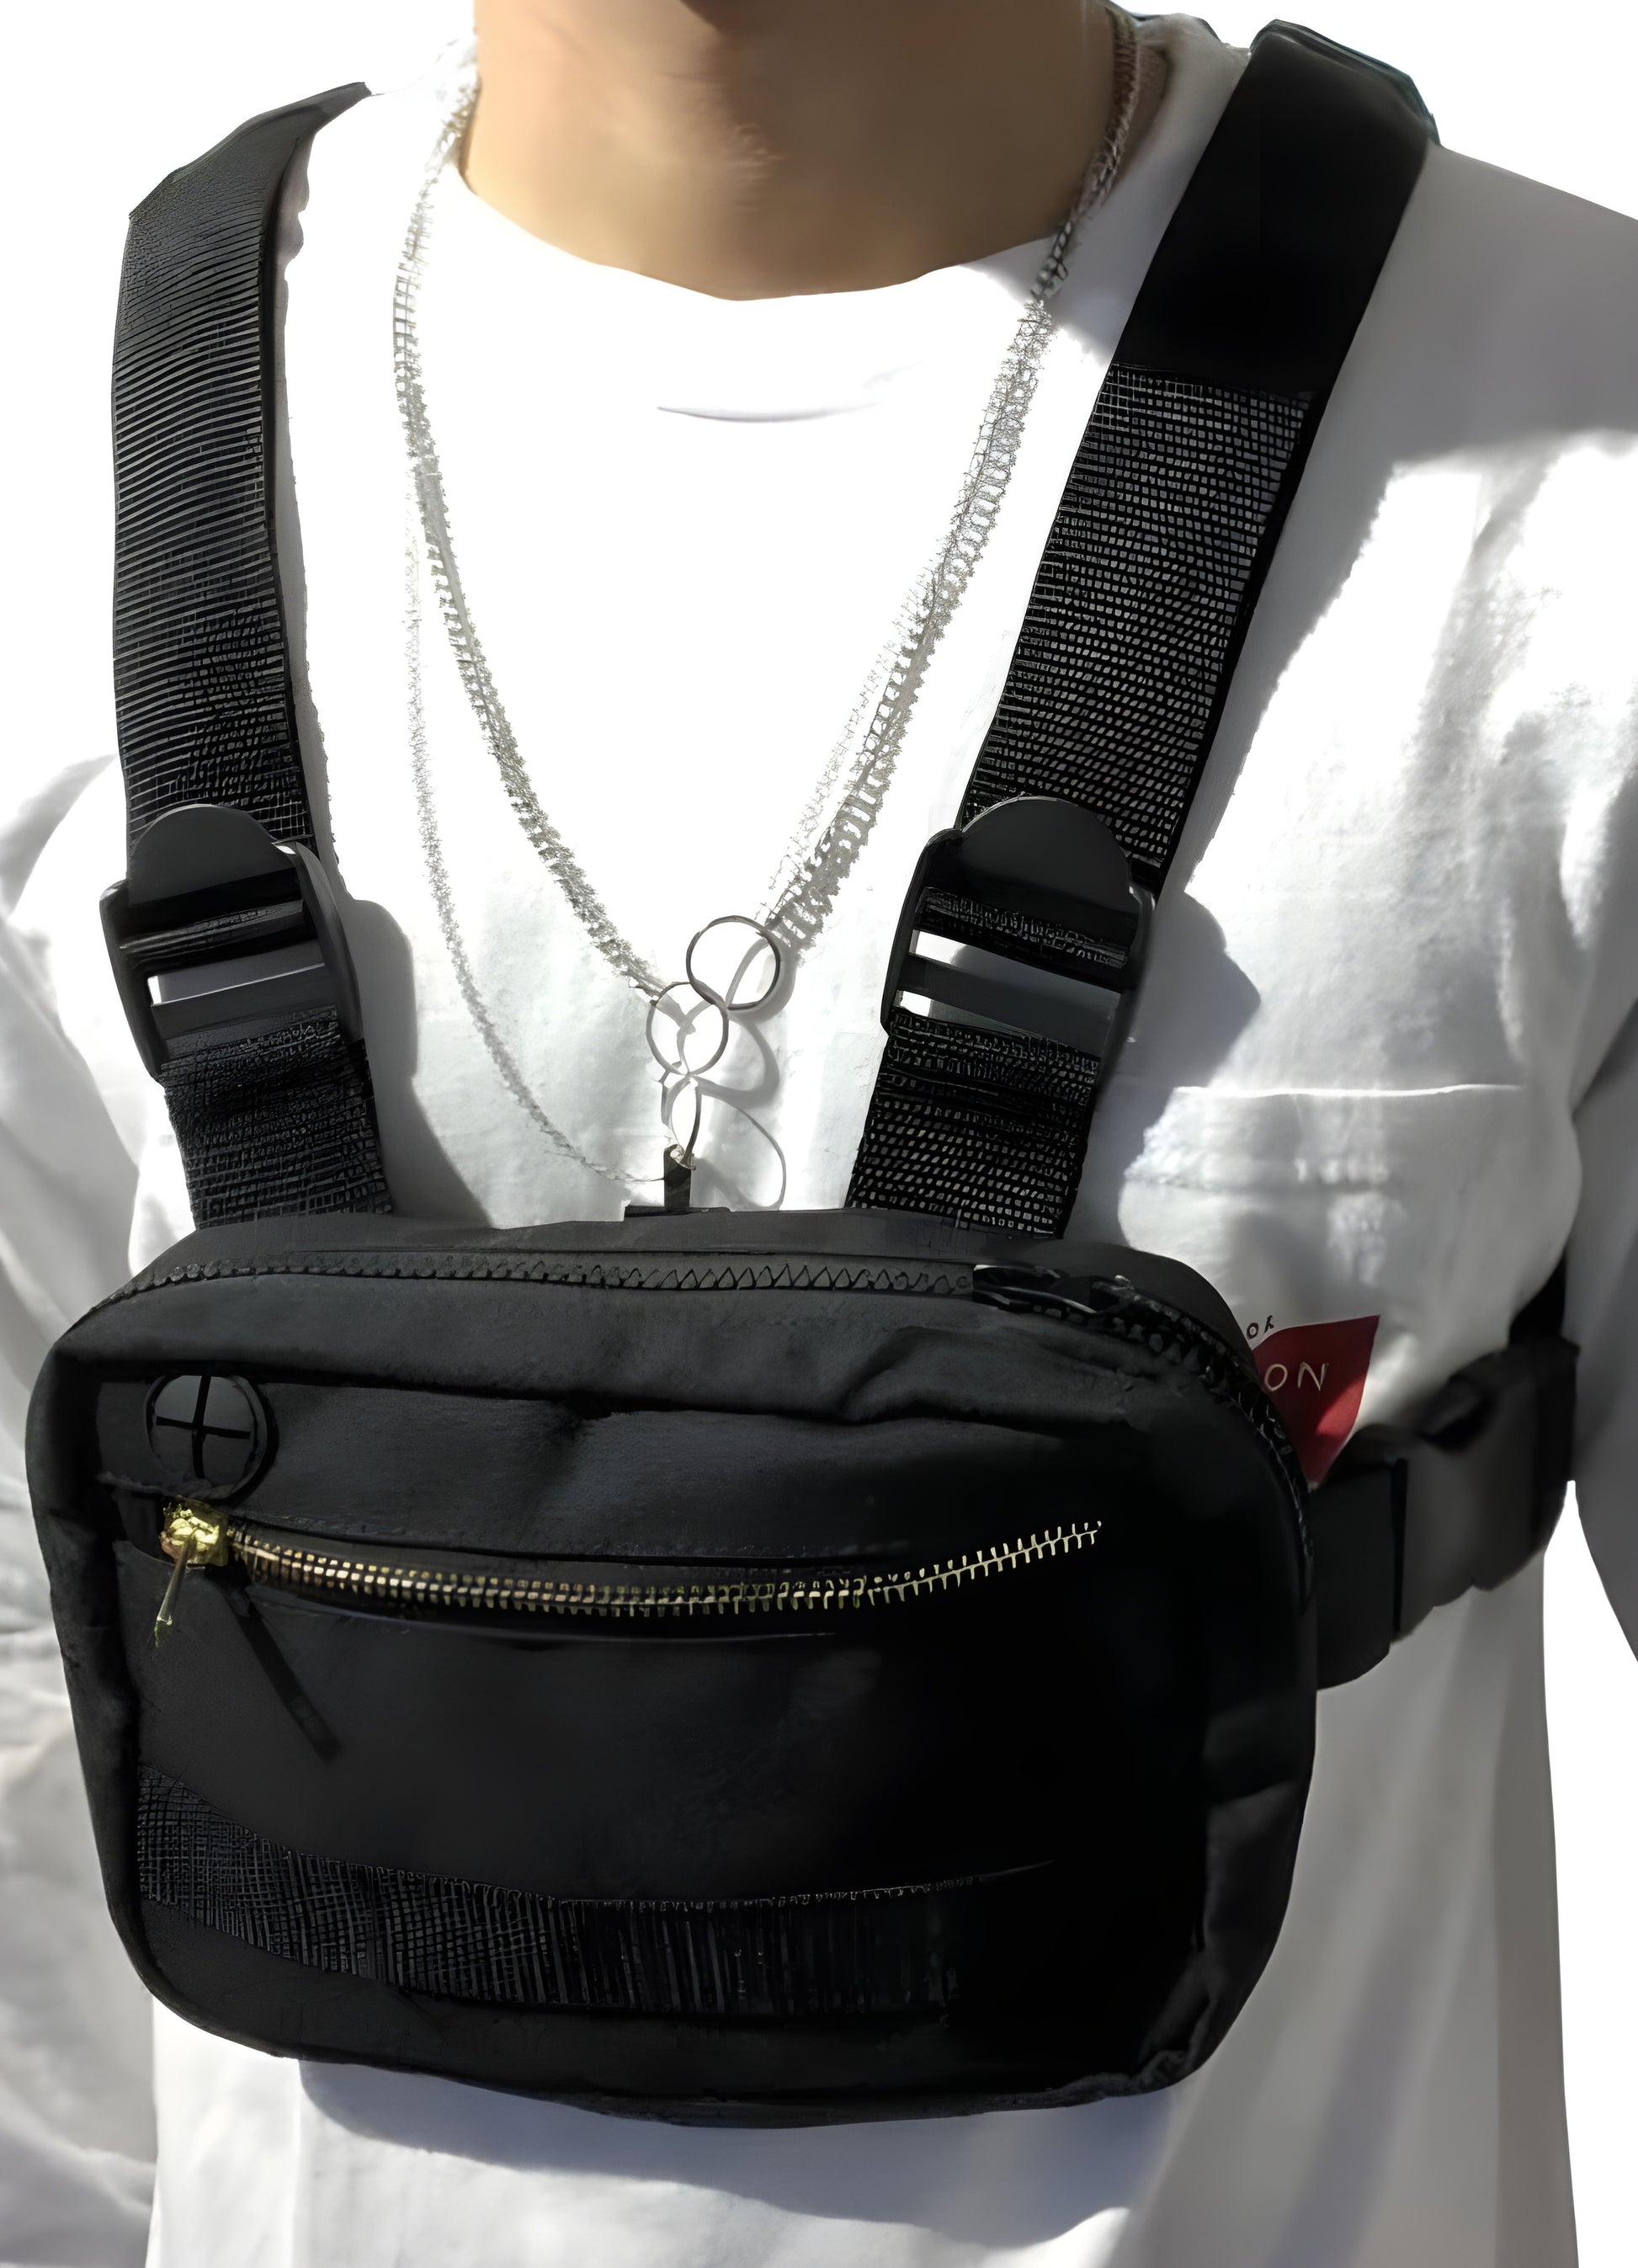 Black chest bag adjustable shoulder strap.